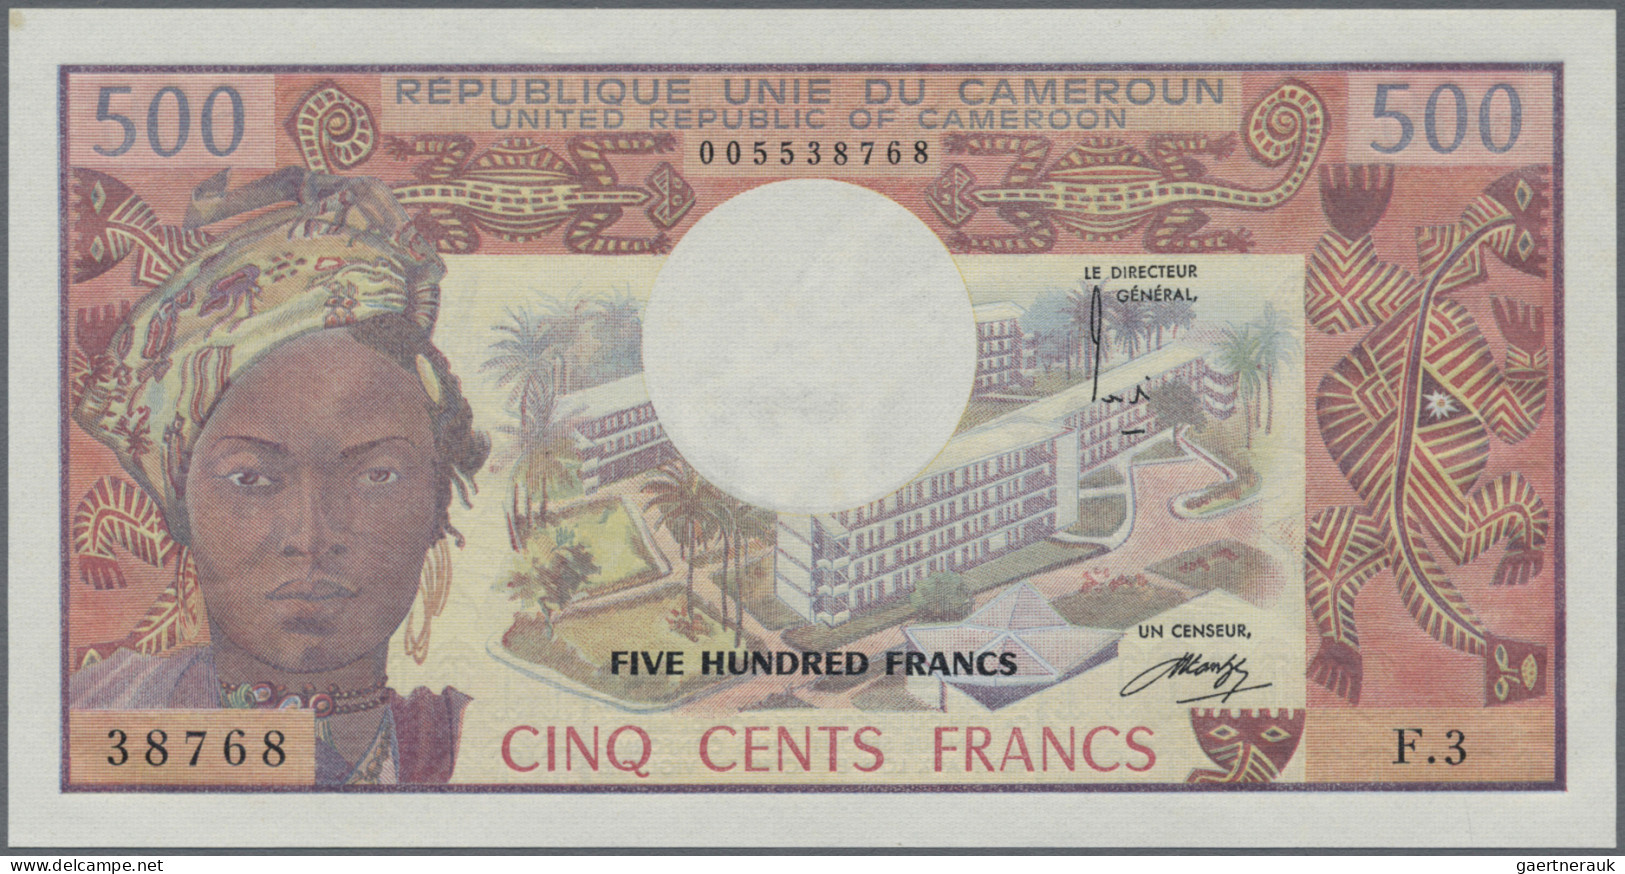 Cameroon: Banque Des États De L'Afrique Centrale - République Unie Du Cameroun, - Cameroun